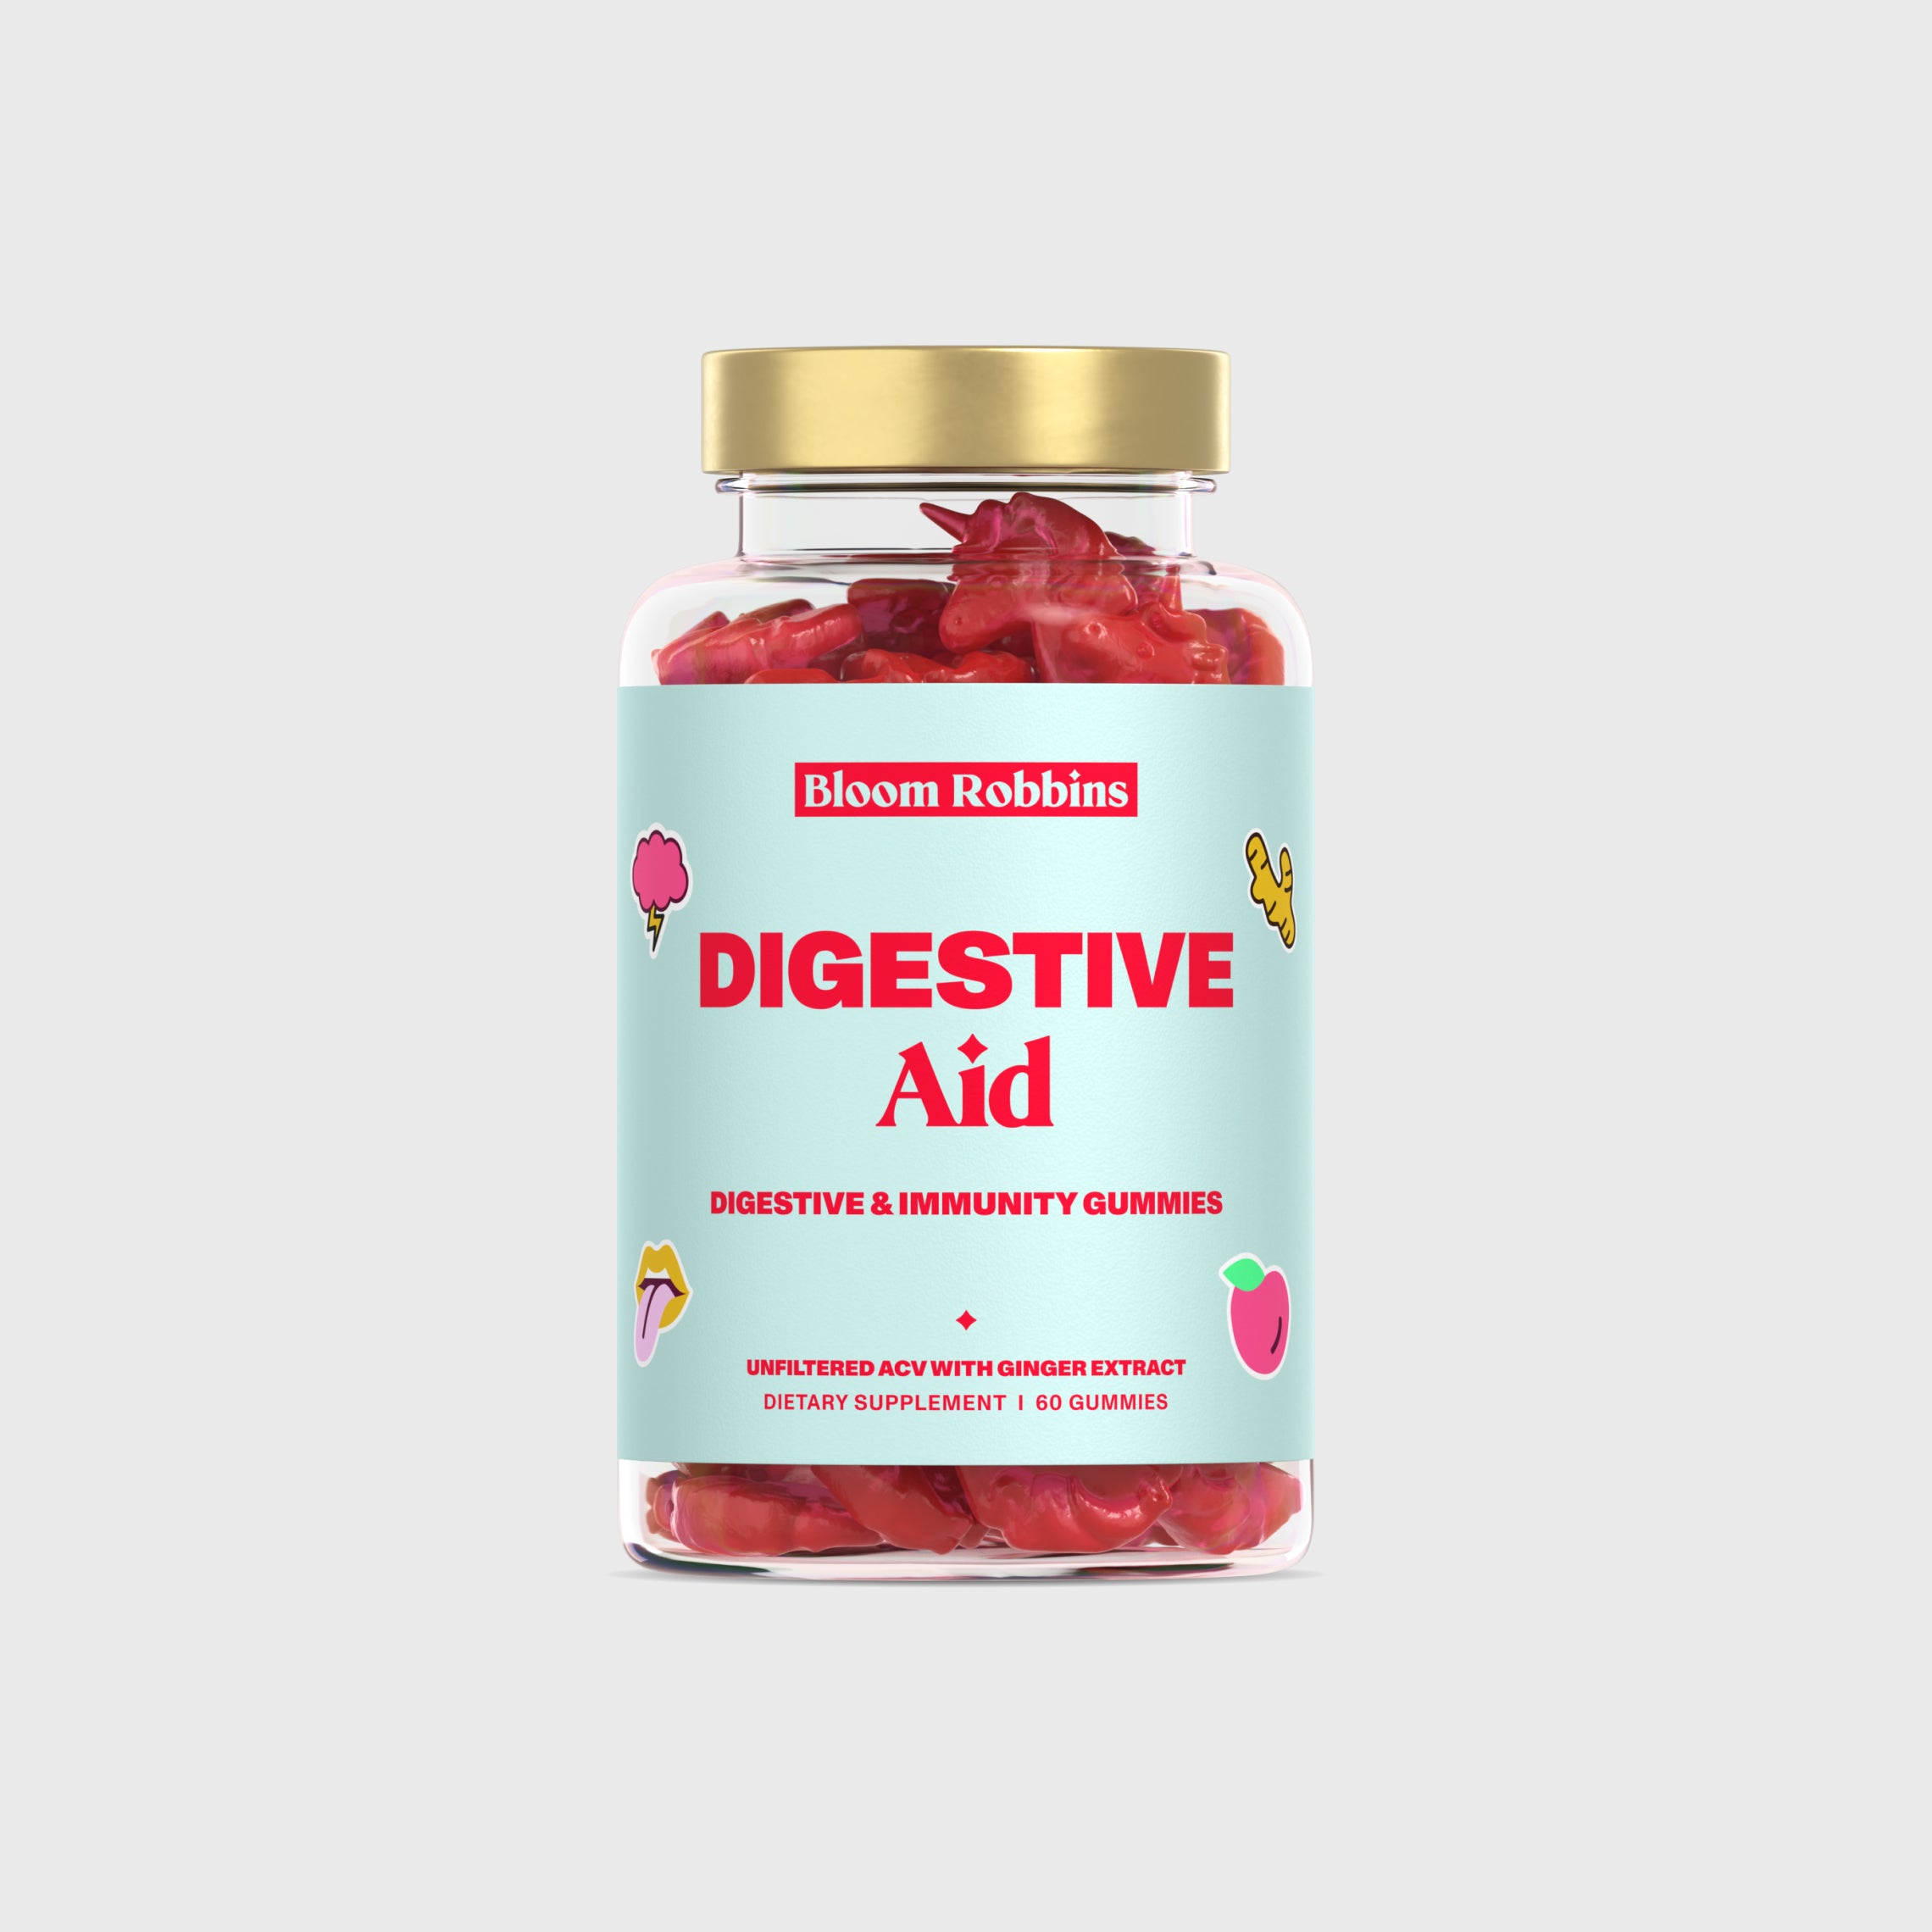 Digestive Aid - Digestive & Immunity gummies